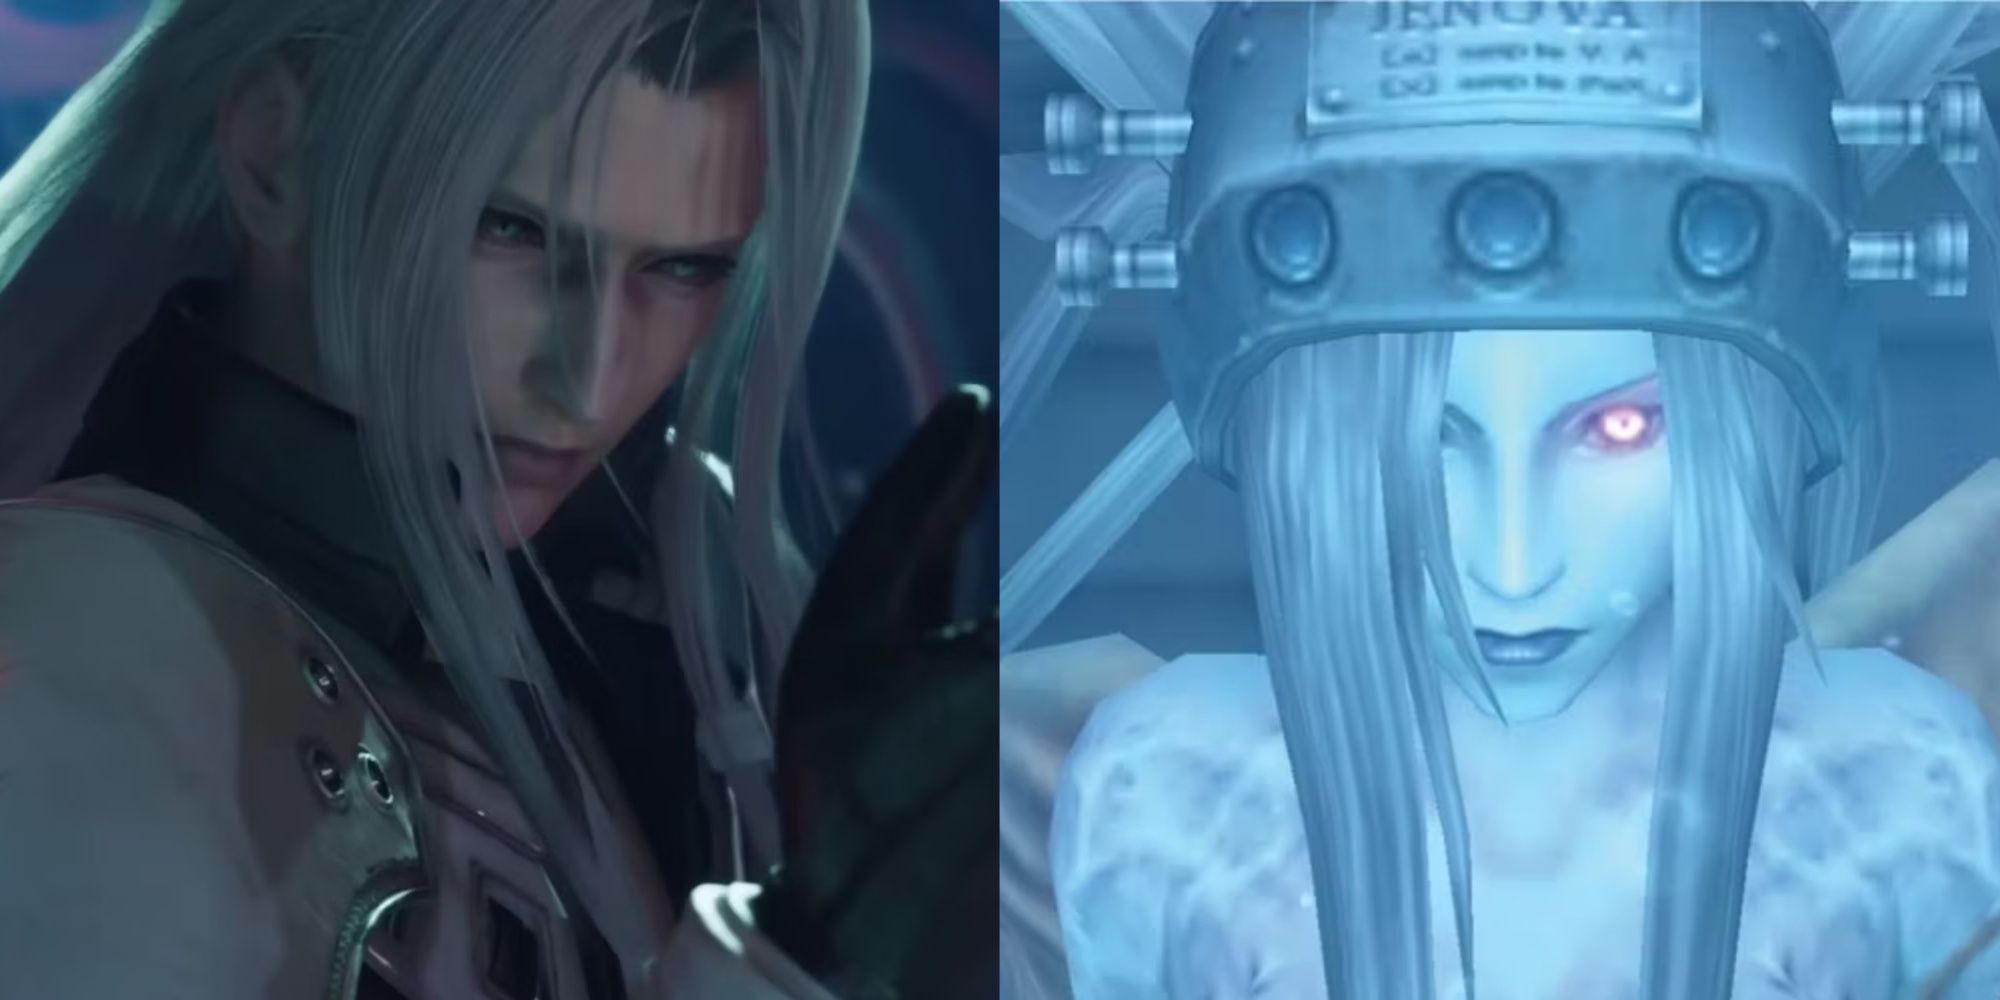 Final Fantasy 7 Sephiroth schaut auf seine Hand und Jenova in ihrem Sicherheitsrohr, von links nach rechts.